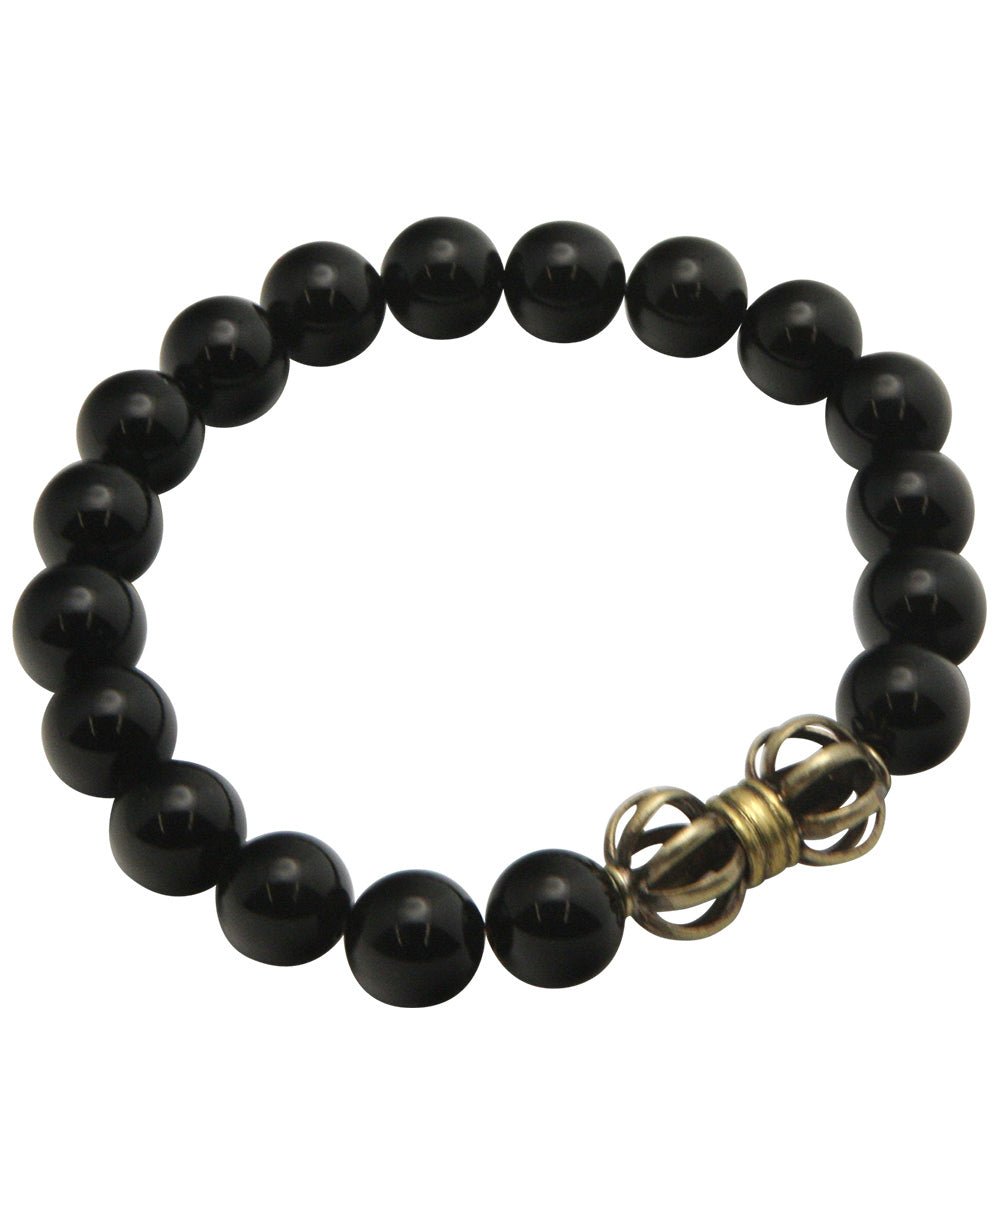 Vajra Black Onyx Stretchy Men's Bracelet - Bracelets